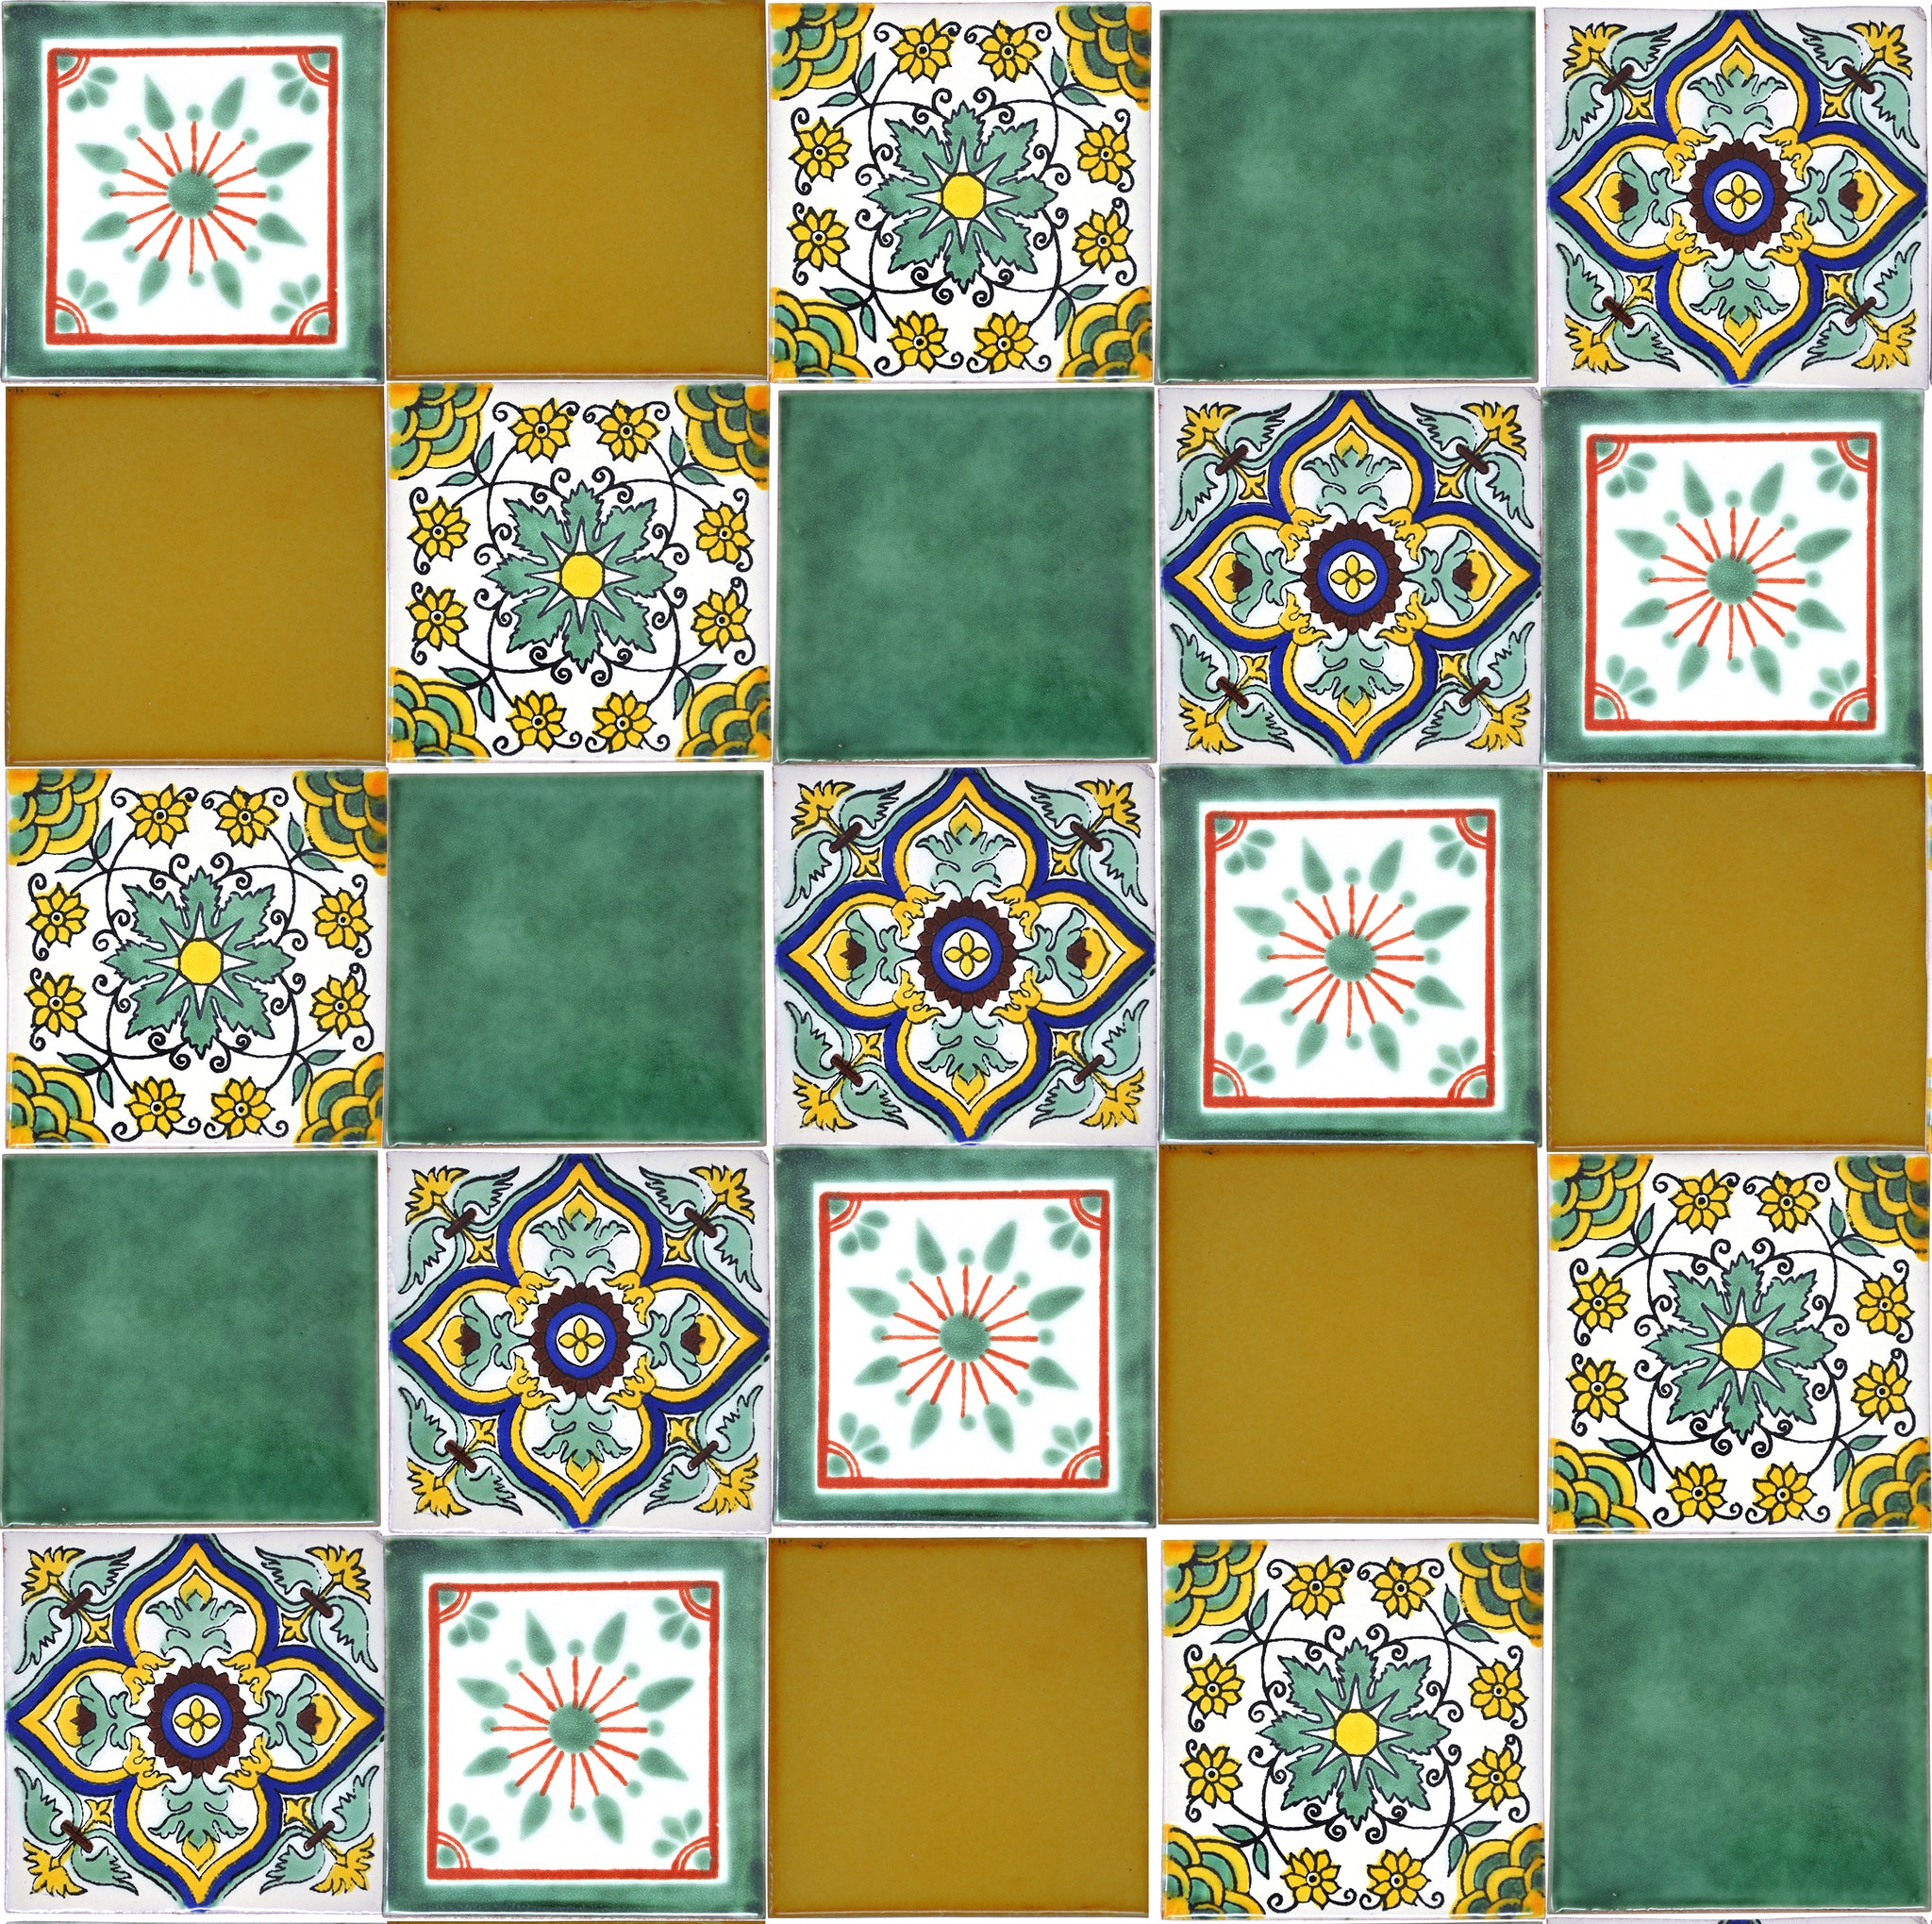 "Fresco" Tile Collection - 25 x 10.5cm Assorted Talavera Mexican Handmade Tiles